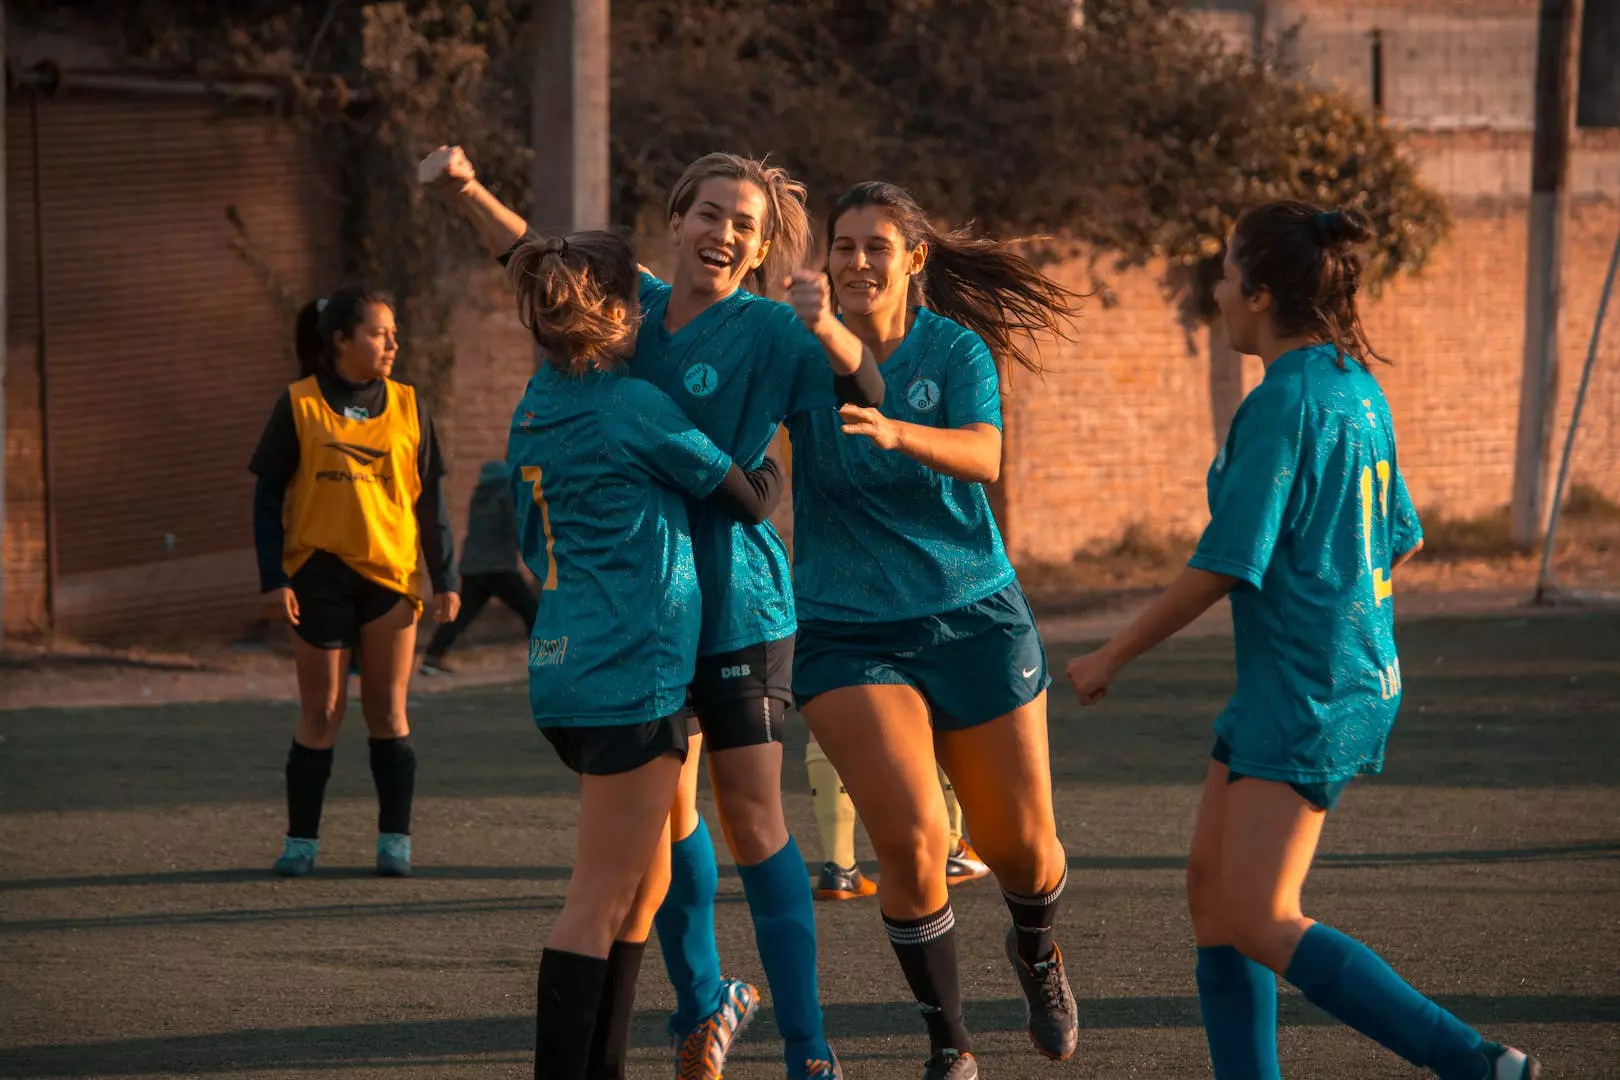 Fotball jenter: En guide til å utvikle, støtte og feire kvinnefotball